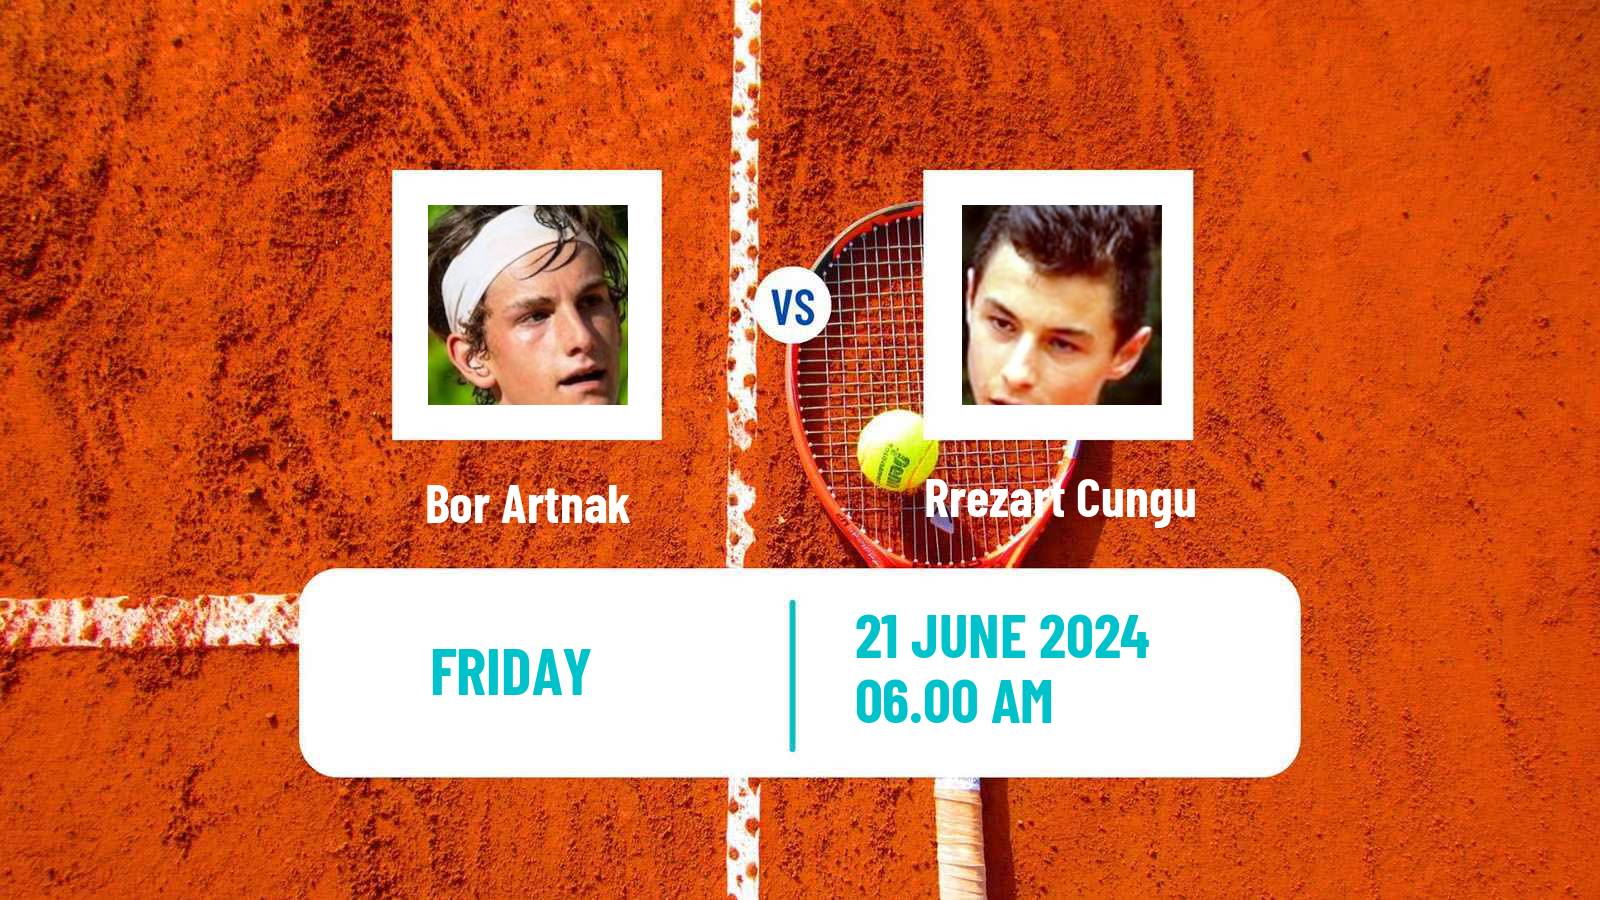 Tennis Davis Cup Group III Bor Artnak - Rrezart Cungu